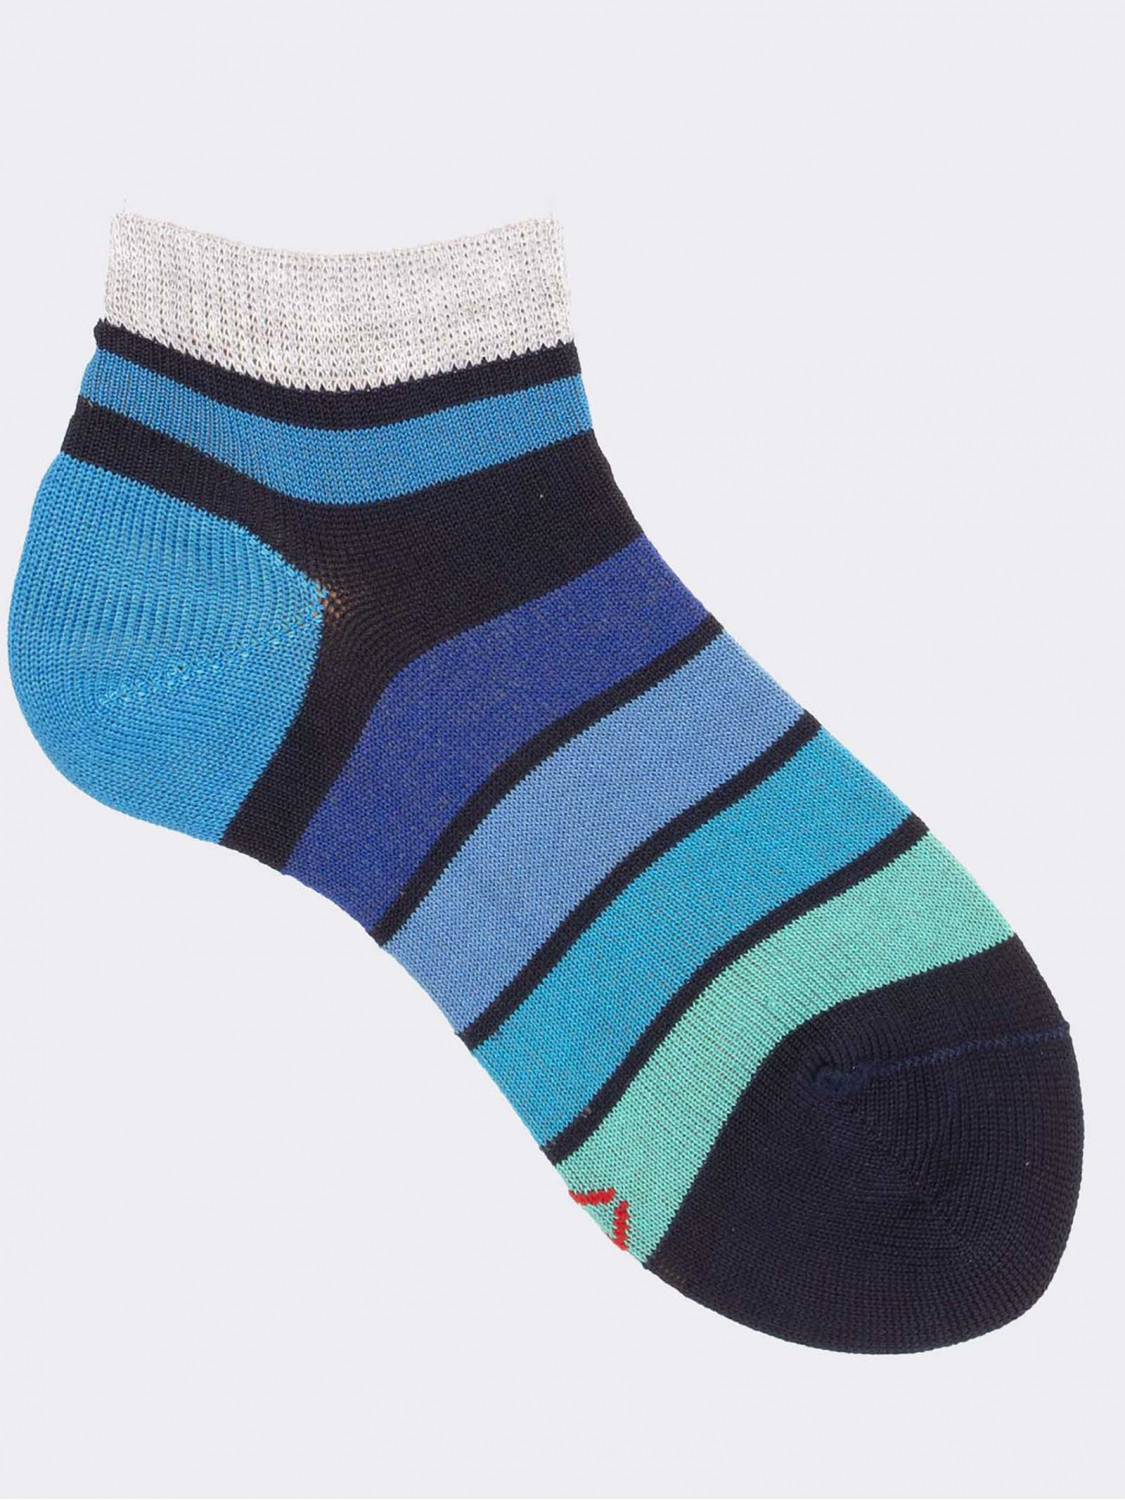 Striped Degrade Pattern Boy's Short Socks in Cotton